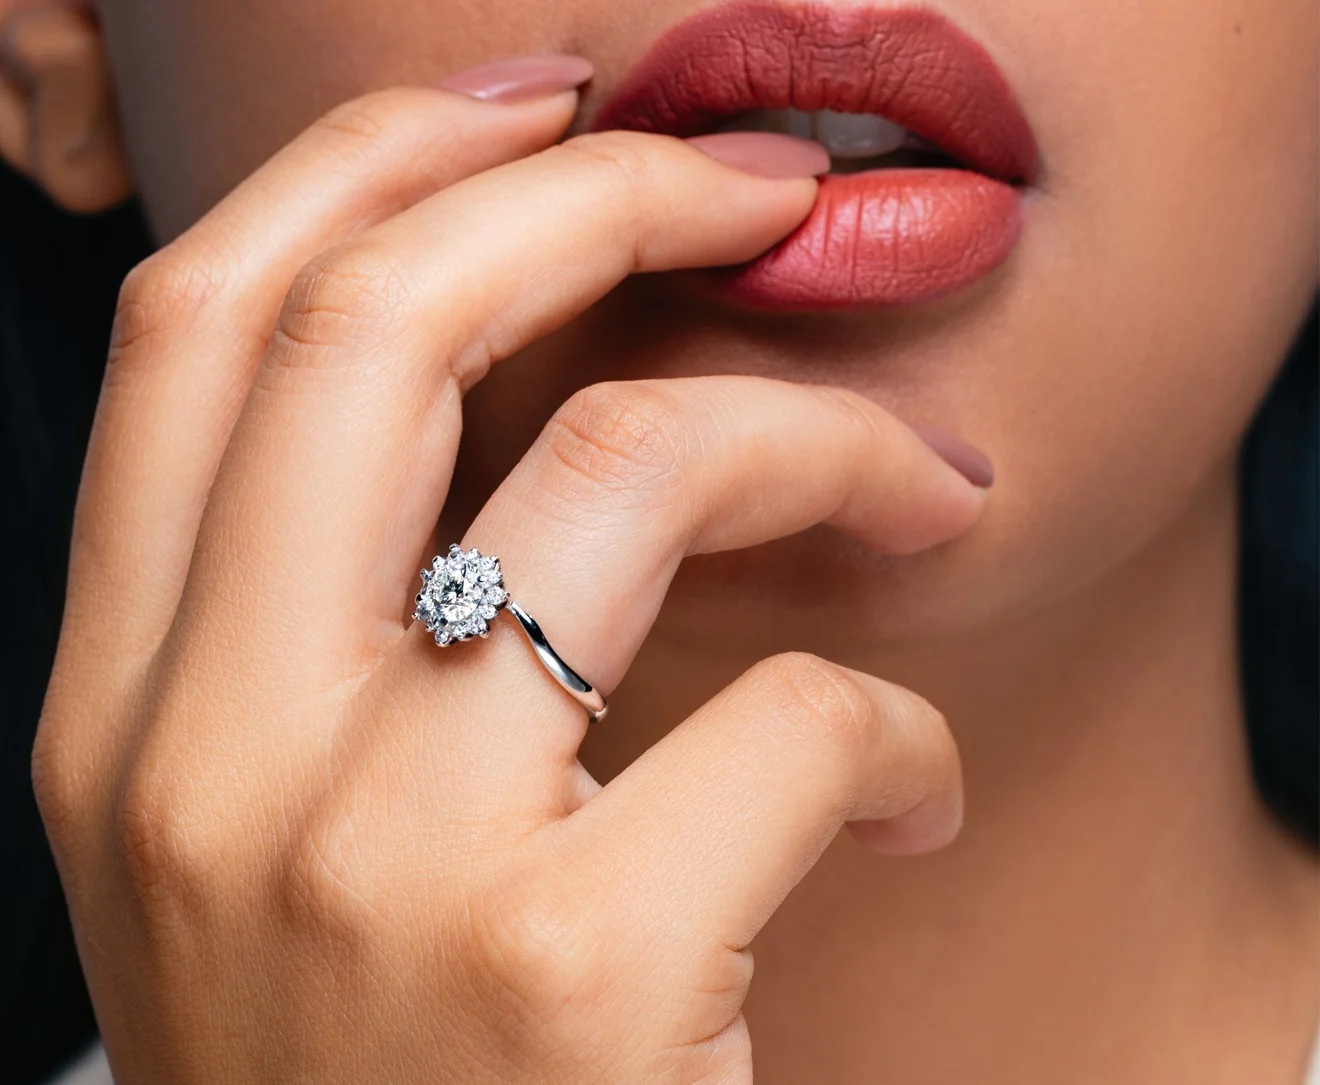 anillos de compromiso con diamantes